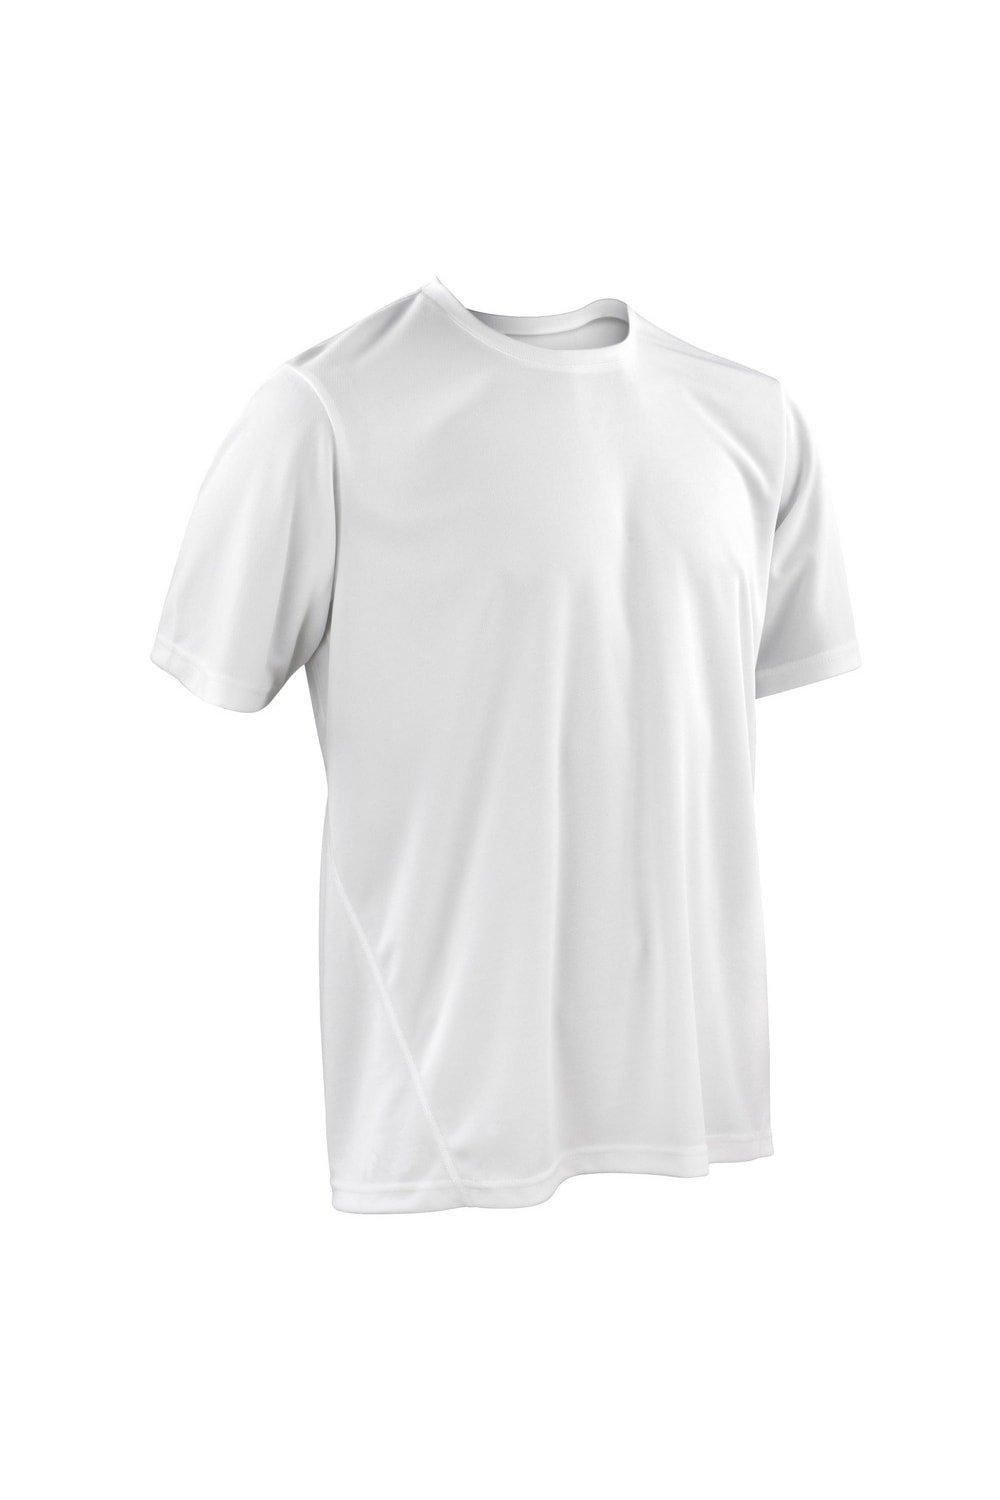 Быстросохнущая спортивная футболка с короткими рукавами Spiro, белый